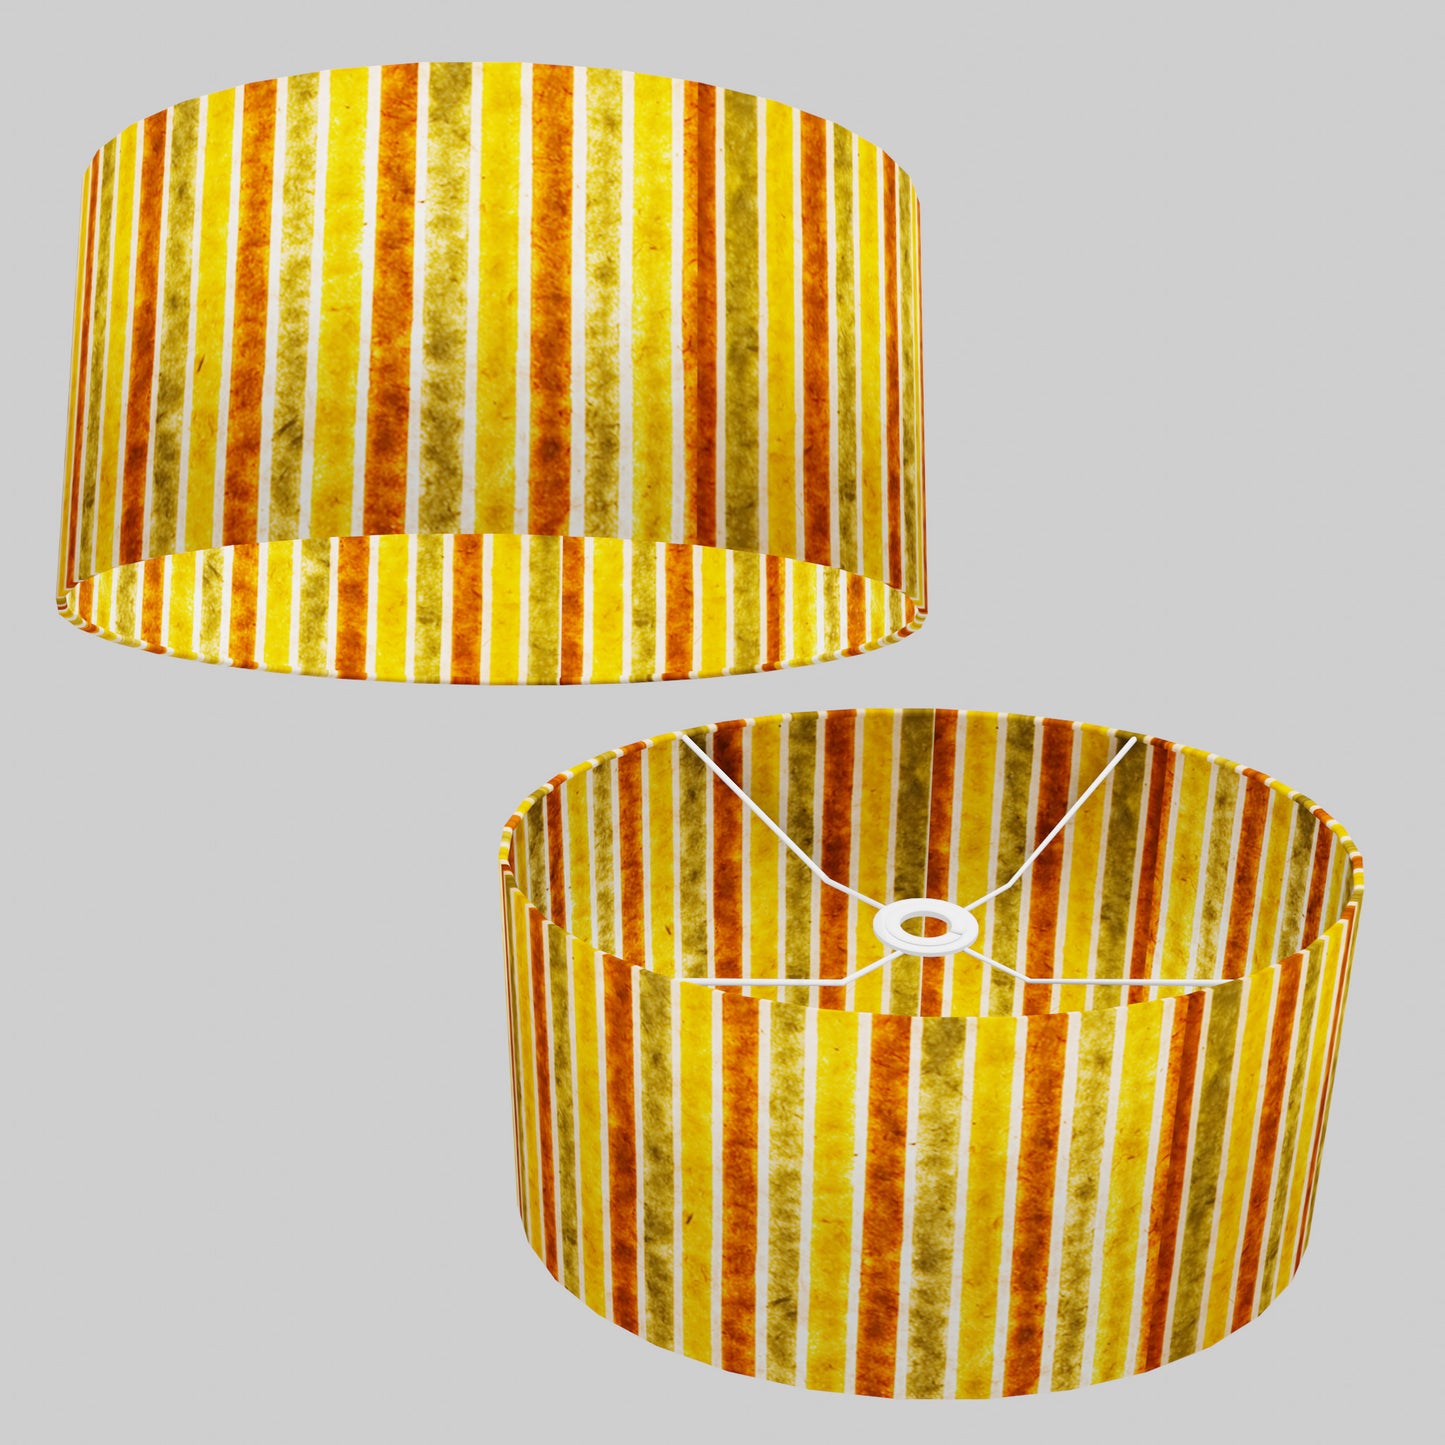 Oval Lamp Shade - P06 - Batik Stripes Autumn, 40cm(w) x 20cm(h) x 30cm(d)